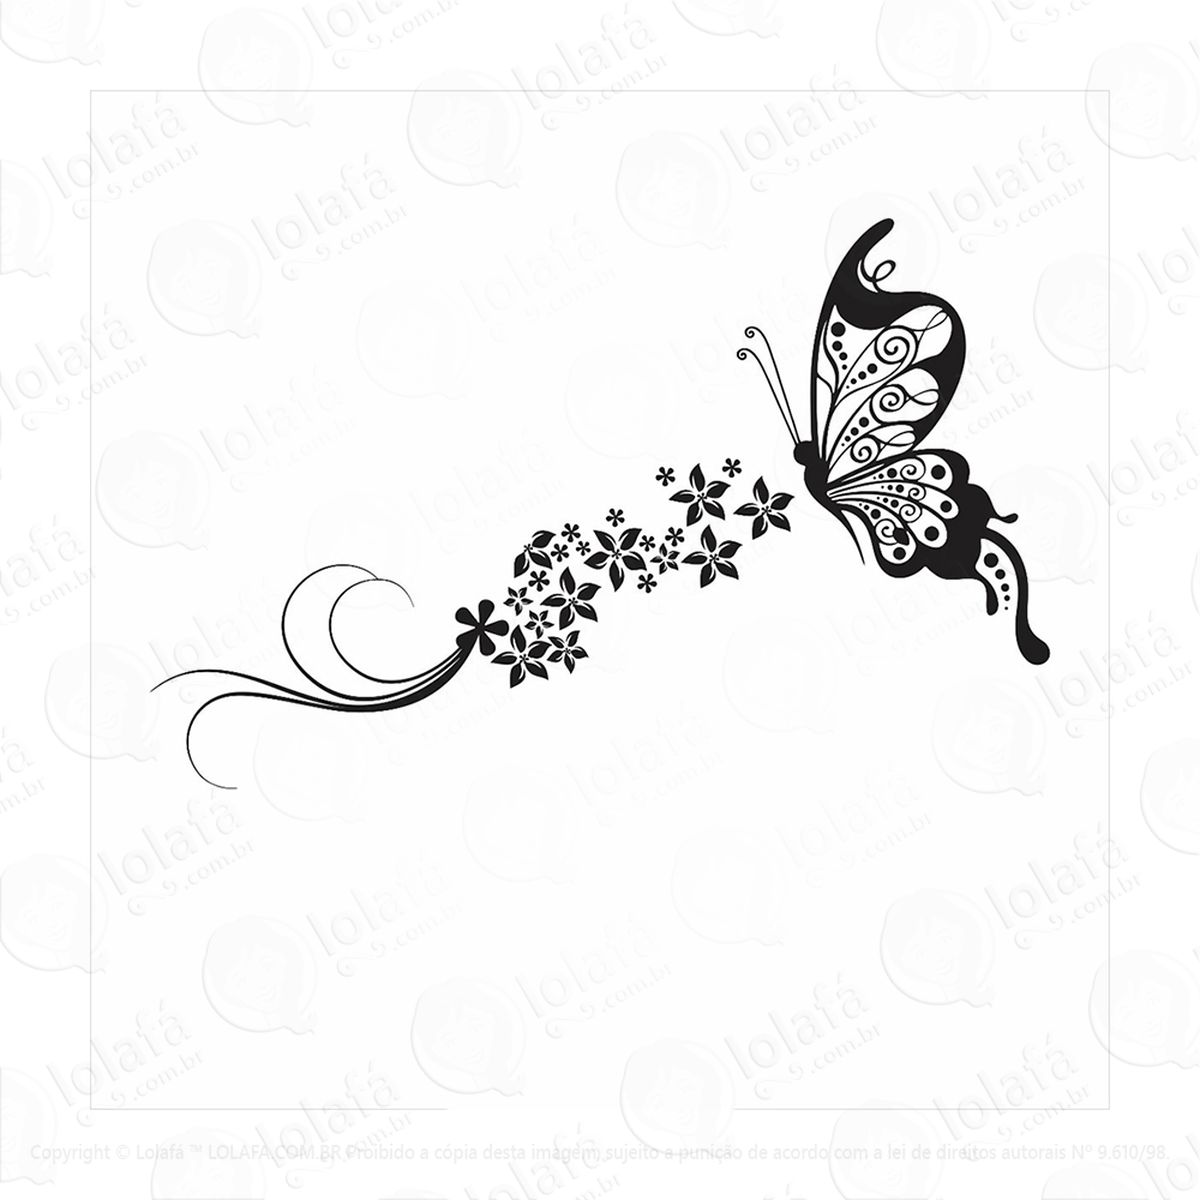 adesivo decorativo parede borboleta floral flores faixa mod:250